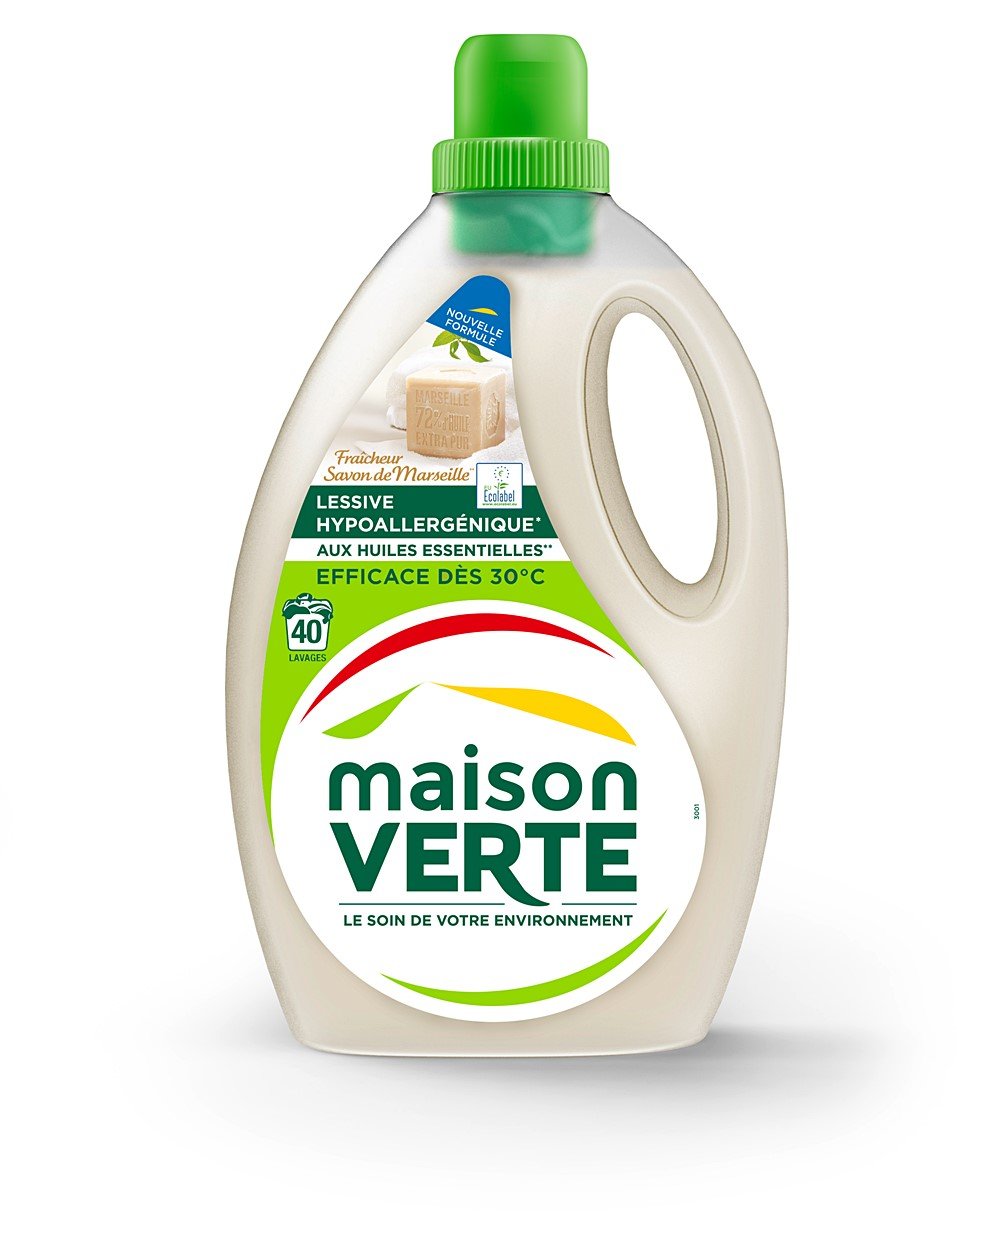 Maison verte lessive savon marseille 2,4 l - Mr.Bricolage